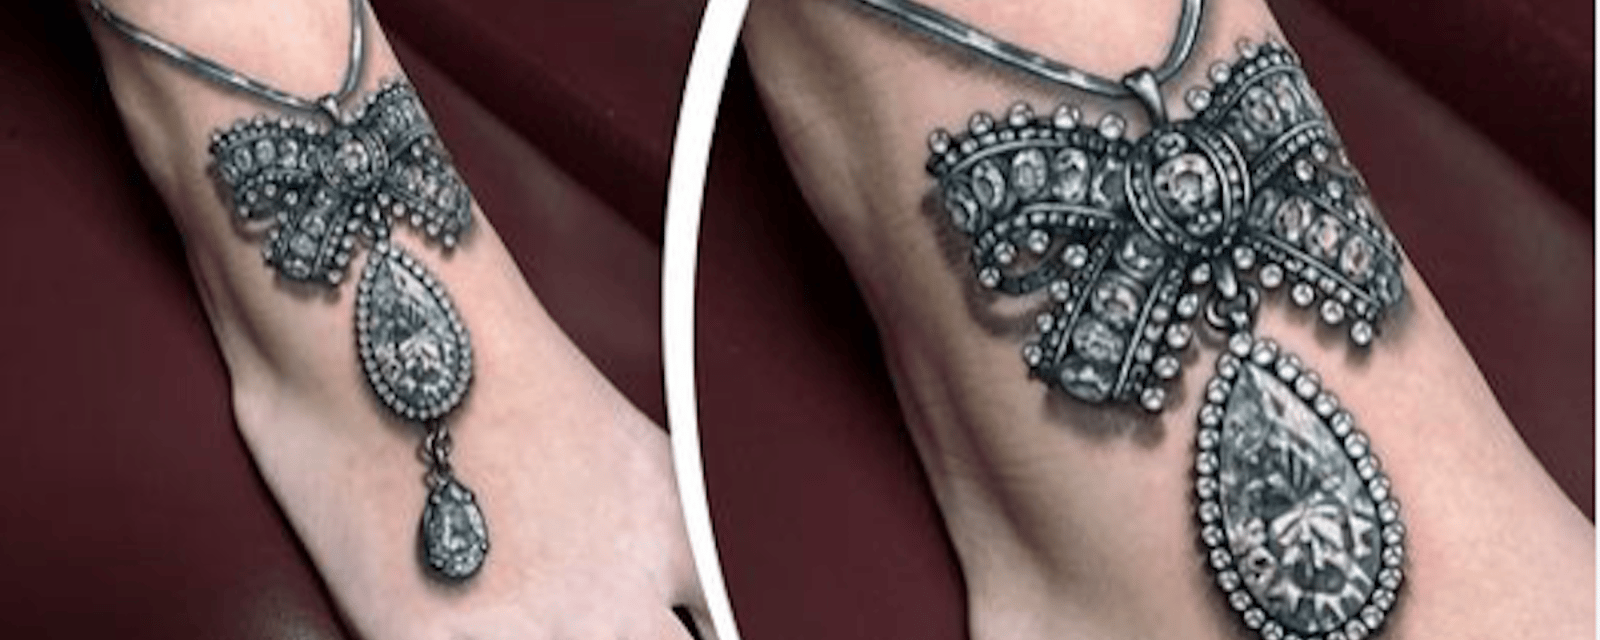 Cette femme réalise des tatouages uniques, qui ressemblent à de véritables joyaux